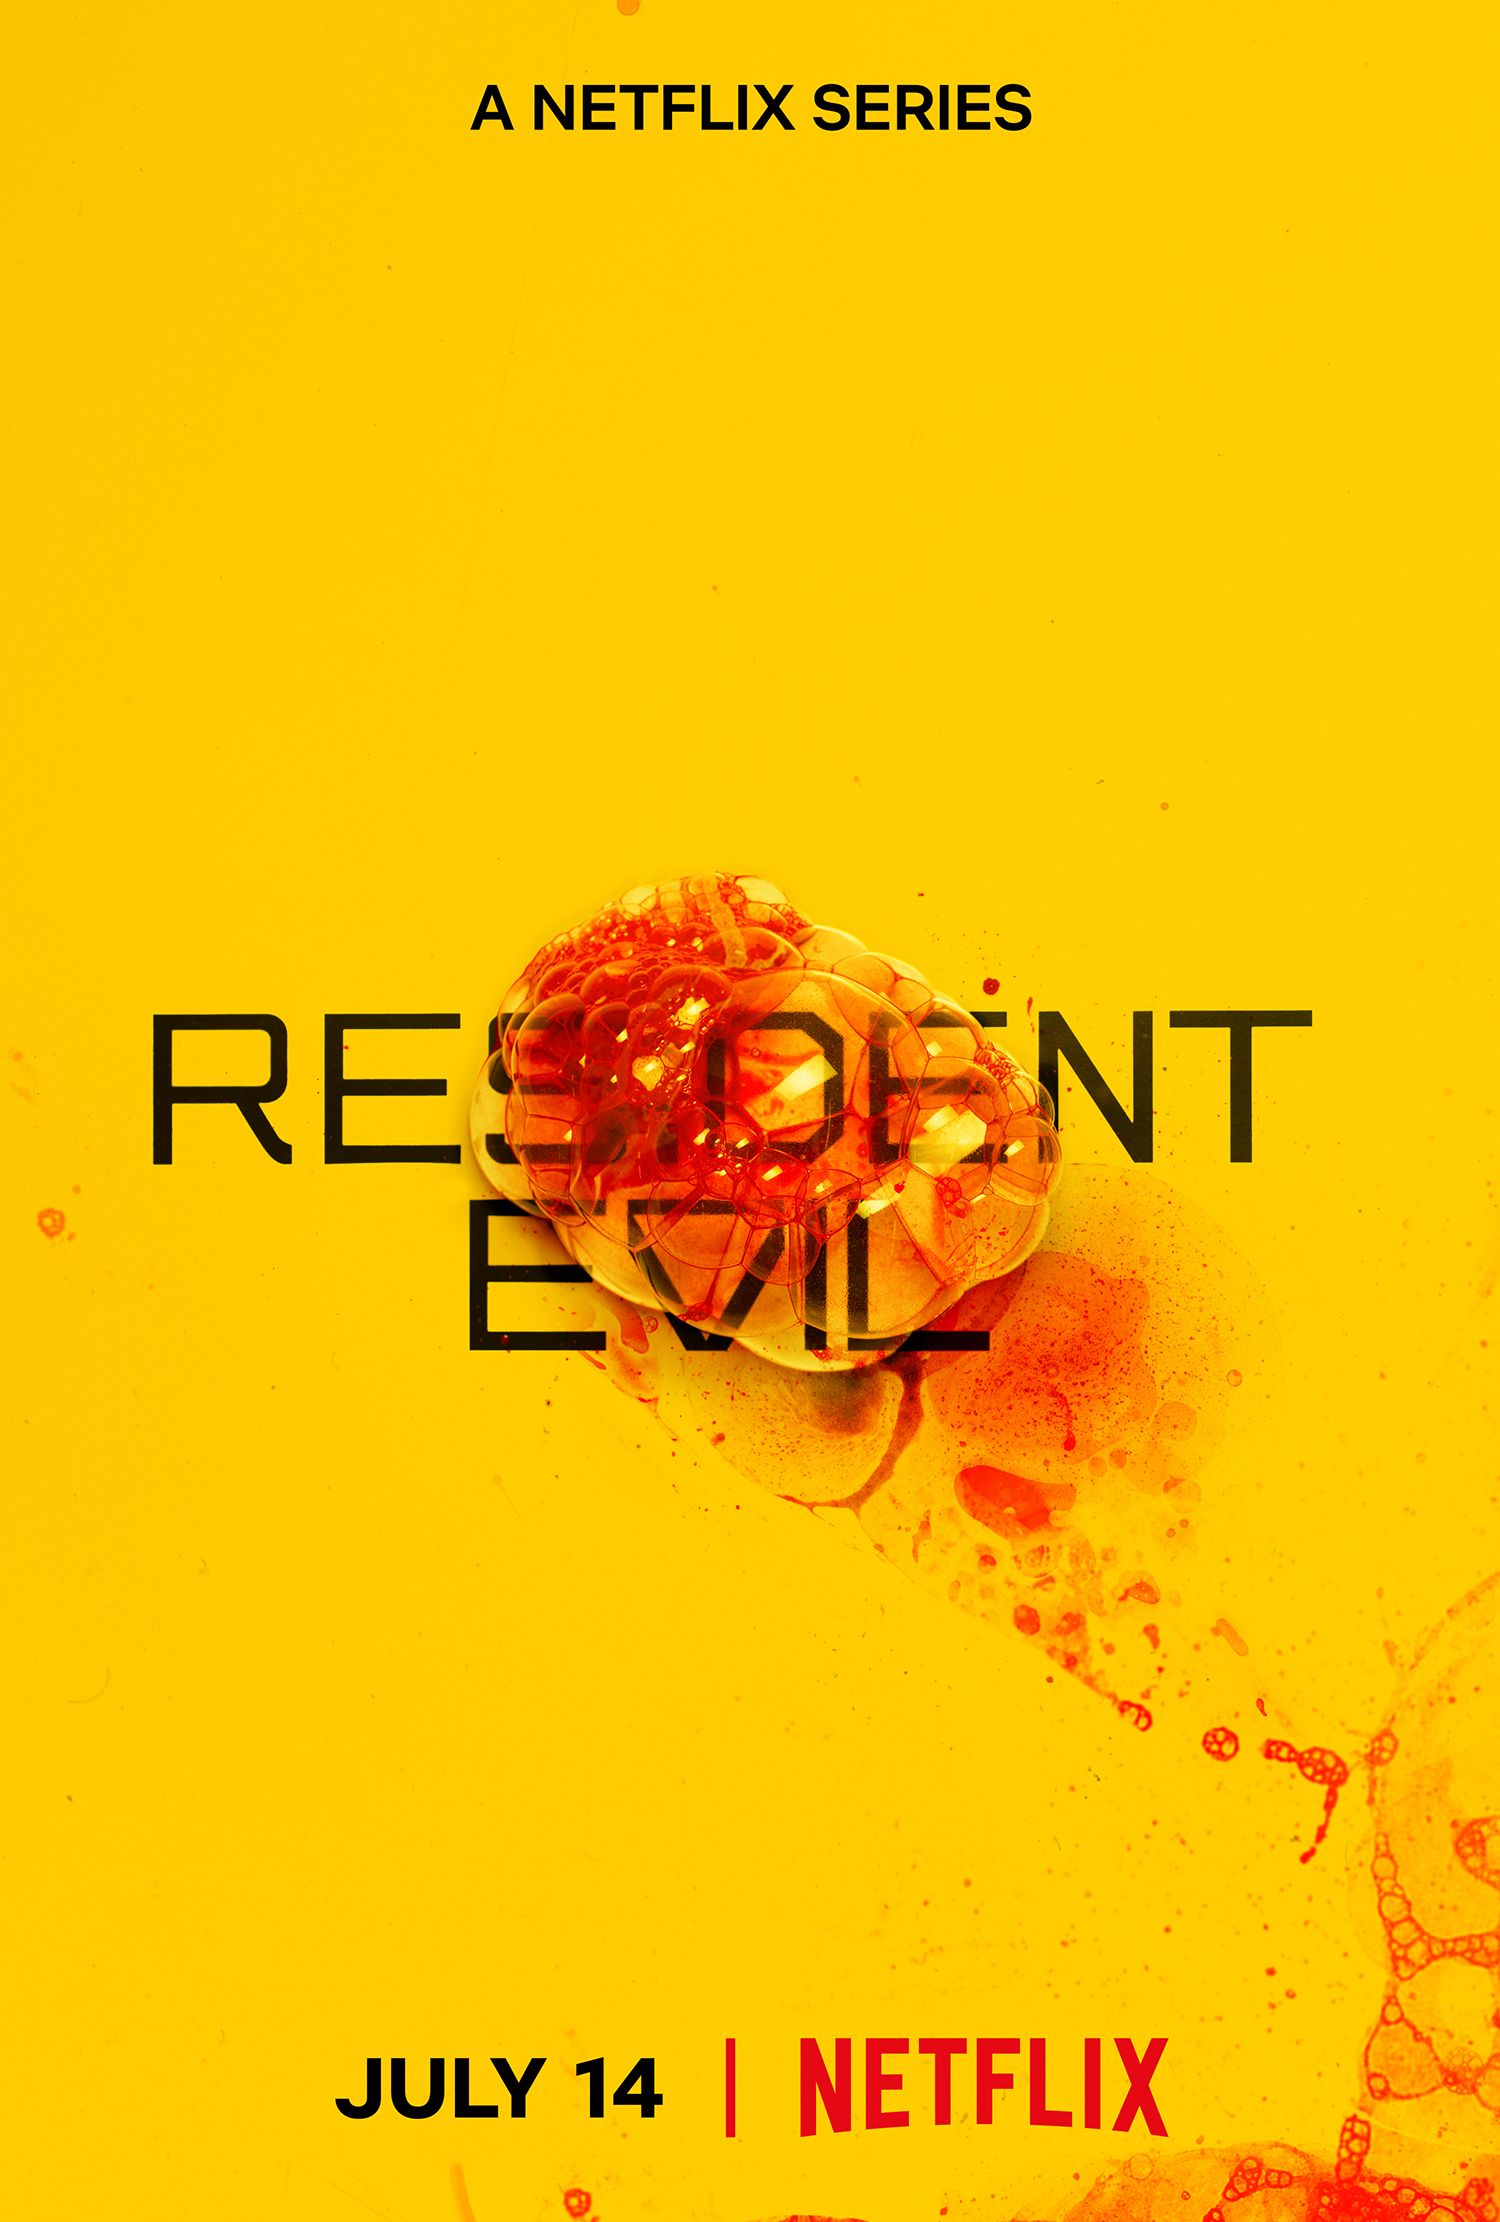 Netflix's Resident Evil